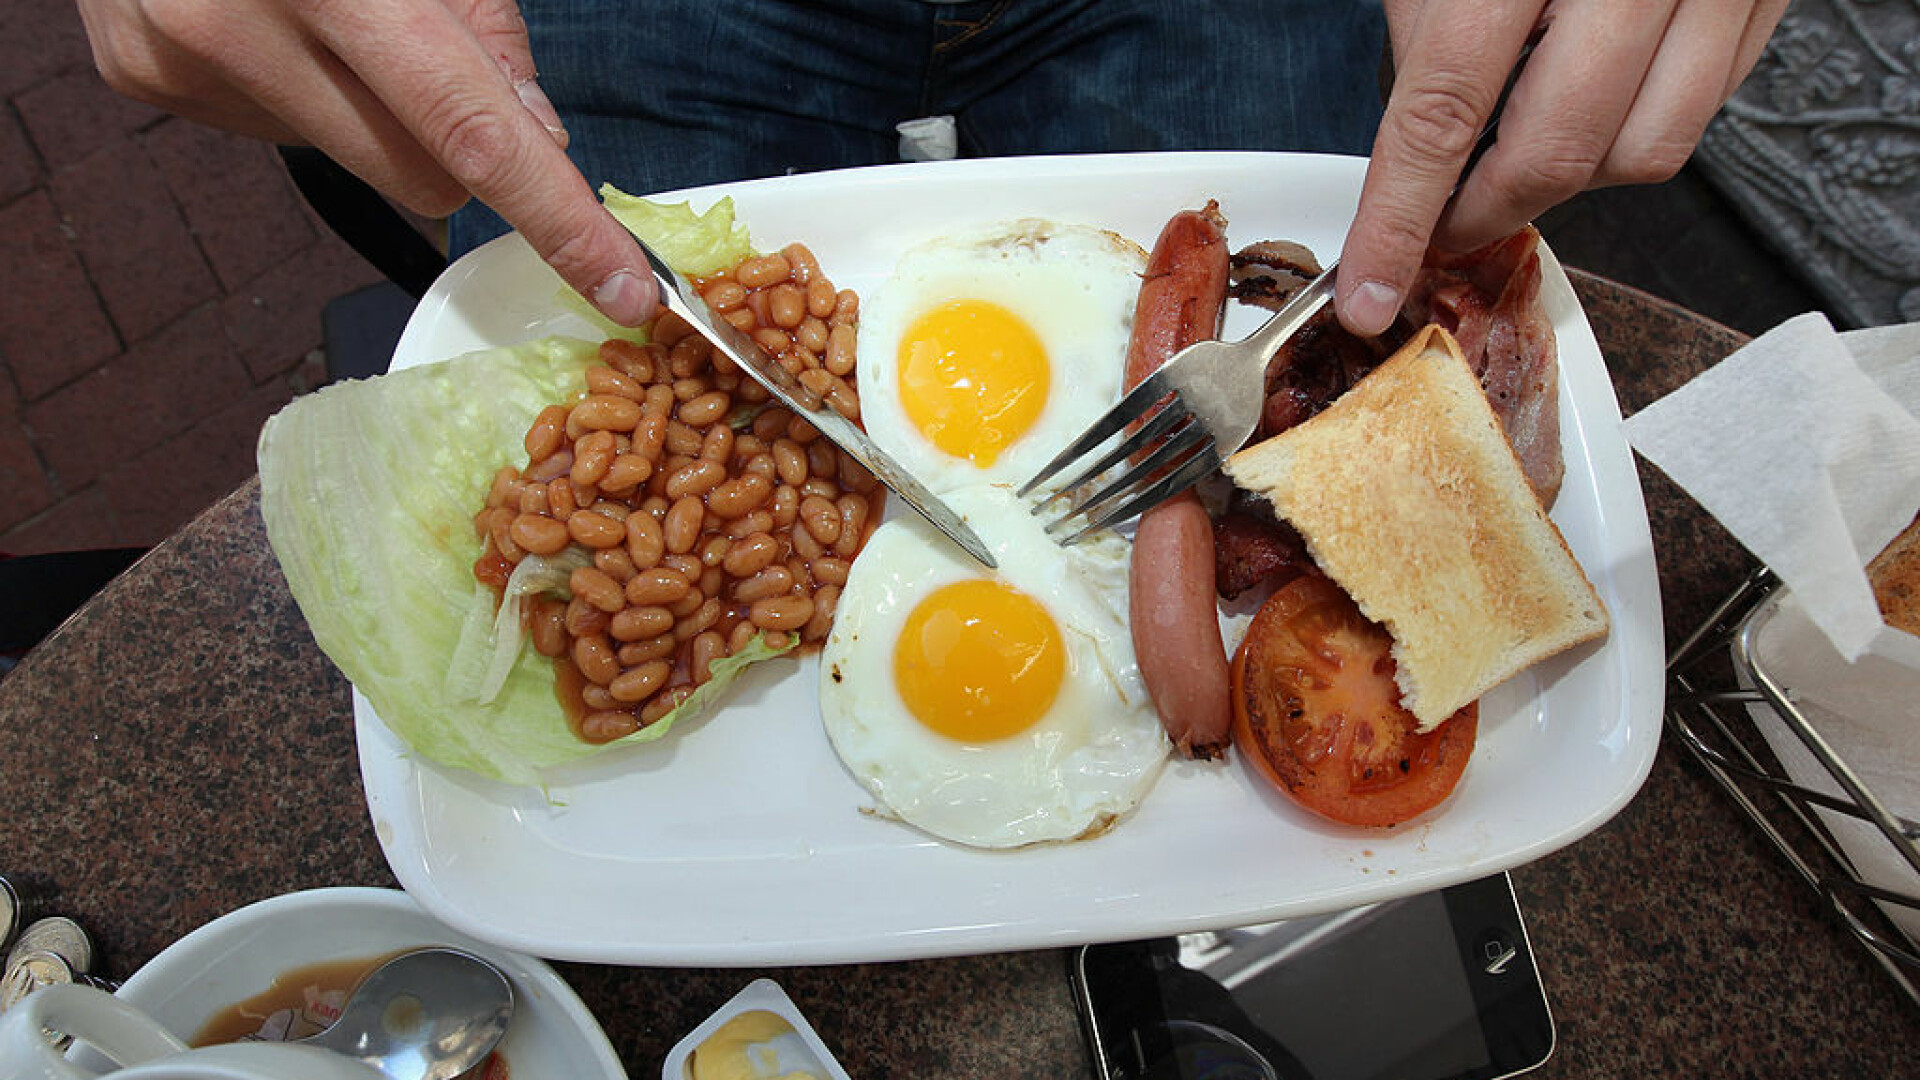 Englezii au ajuns să cheltuie 8 euro pentru a-și găti un mic dejun. Cele mai rapide scumpiri din ultimii 40 de ani